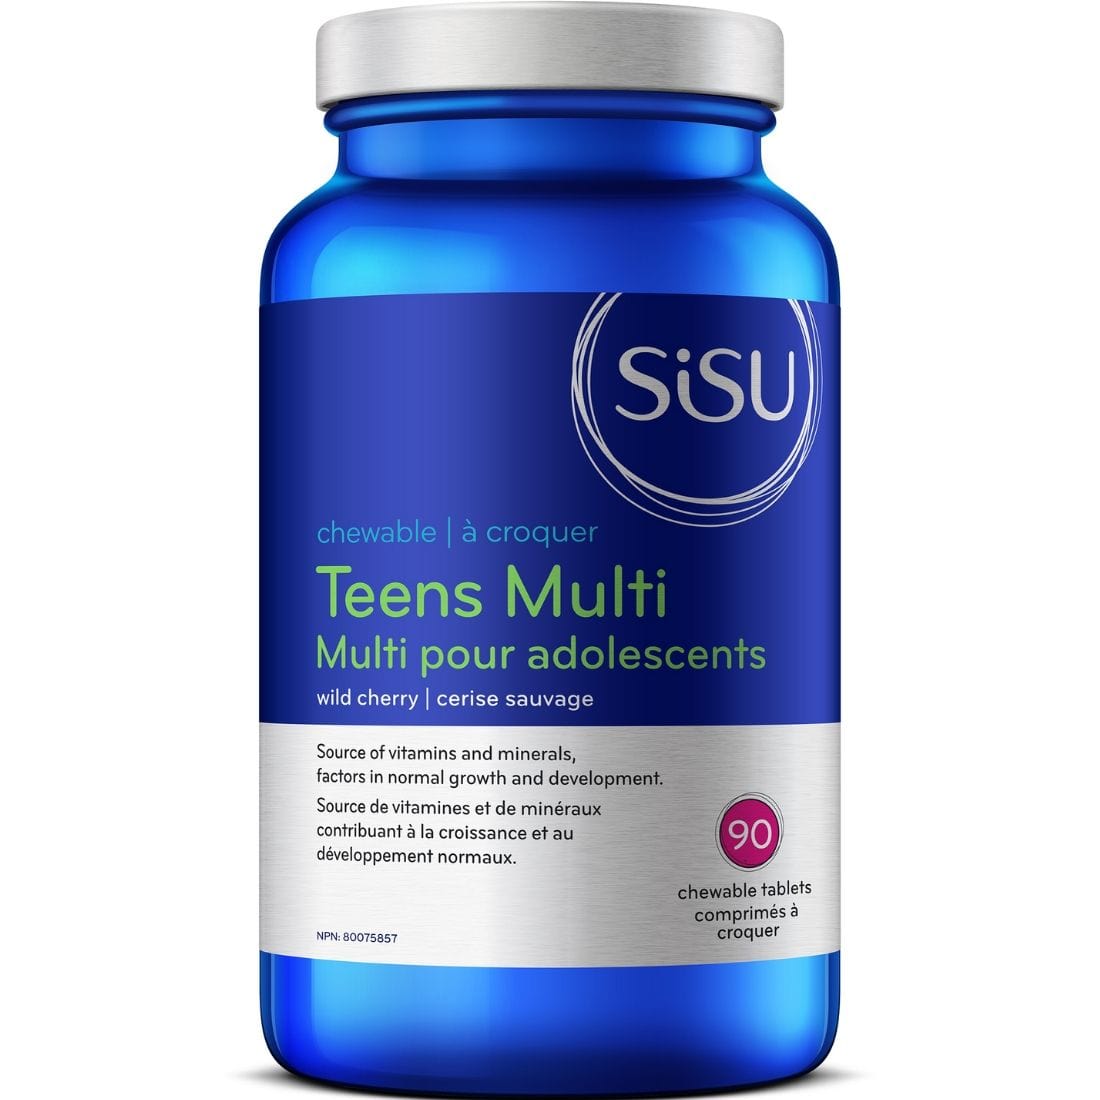 SISU Teens Multi, 90 Chewable Tablets